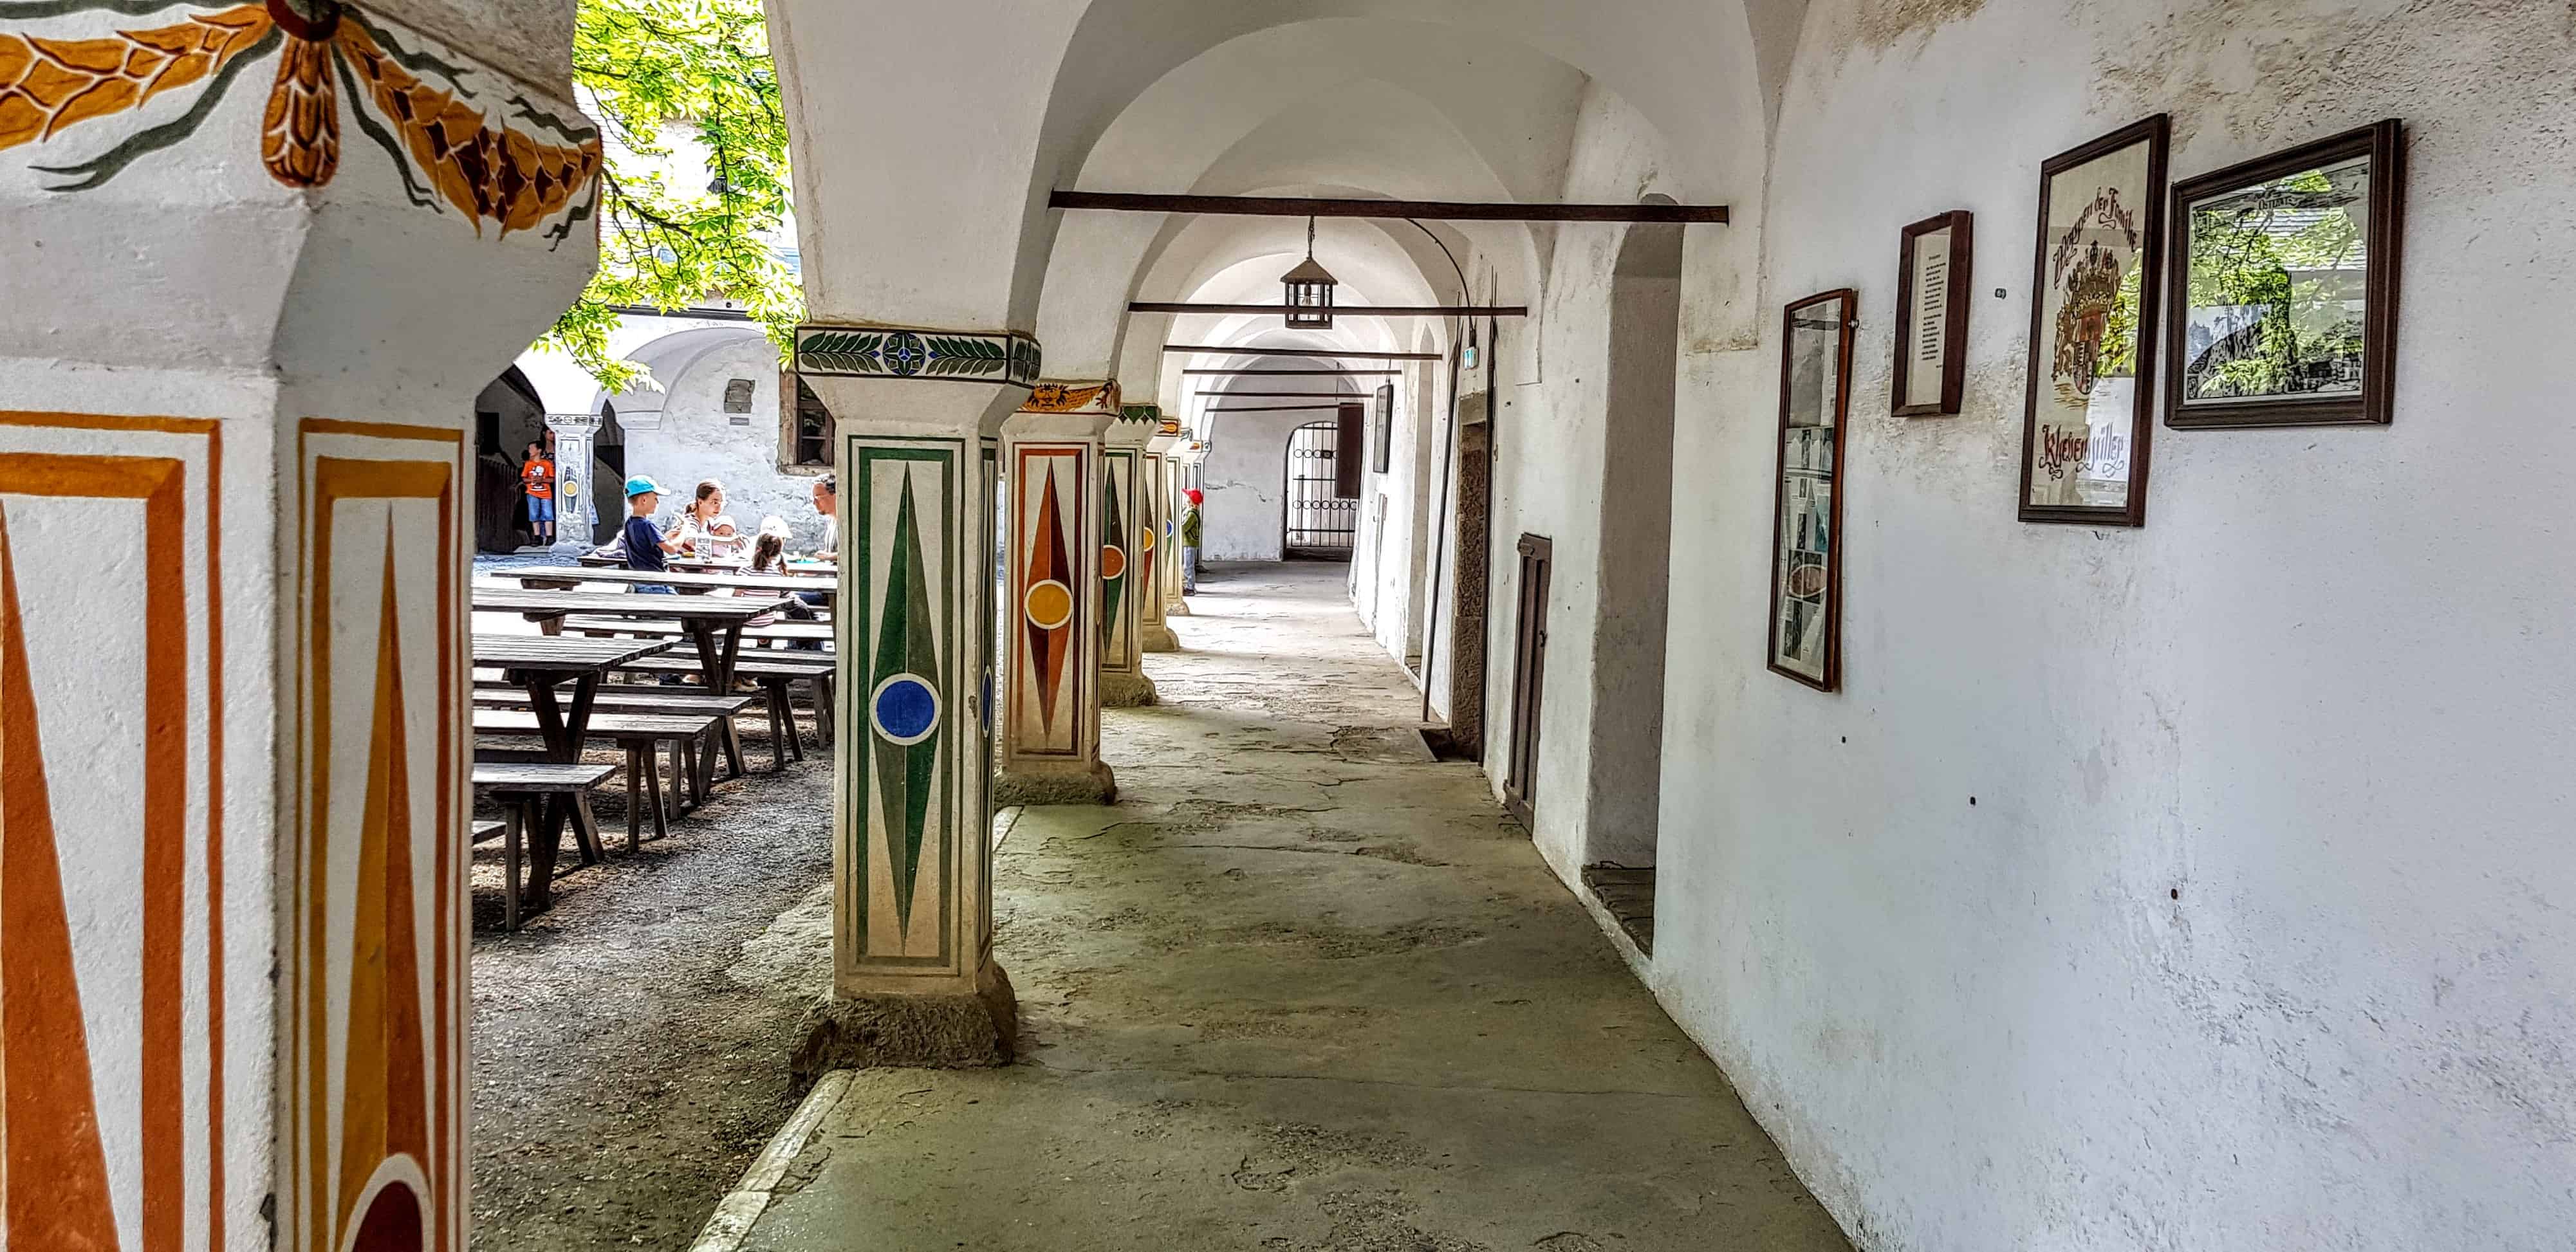 Burghof mit Restaurant und Eingang zum Museum auf der Burg Hochosterwitz - eines von Kärntens TOP-10 Ausflugszielen.